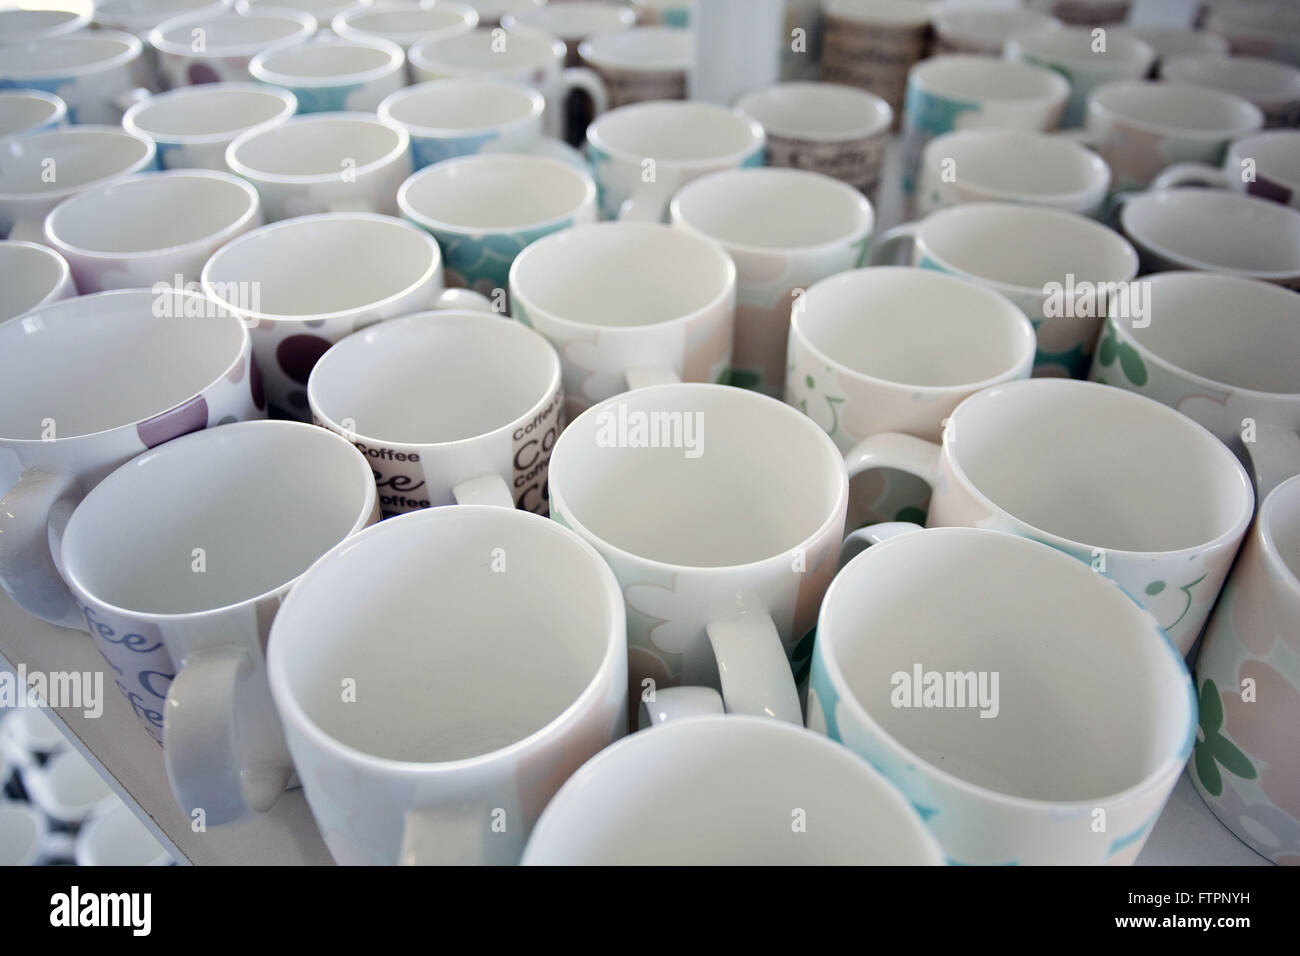 Mugs for sale Banque de photographies et d'images à haute résolution - Alamy